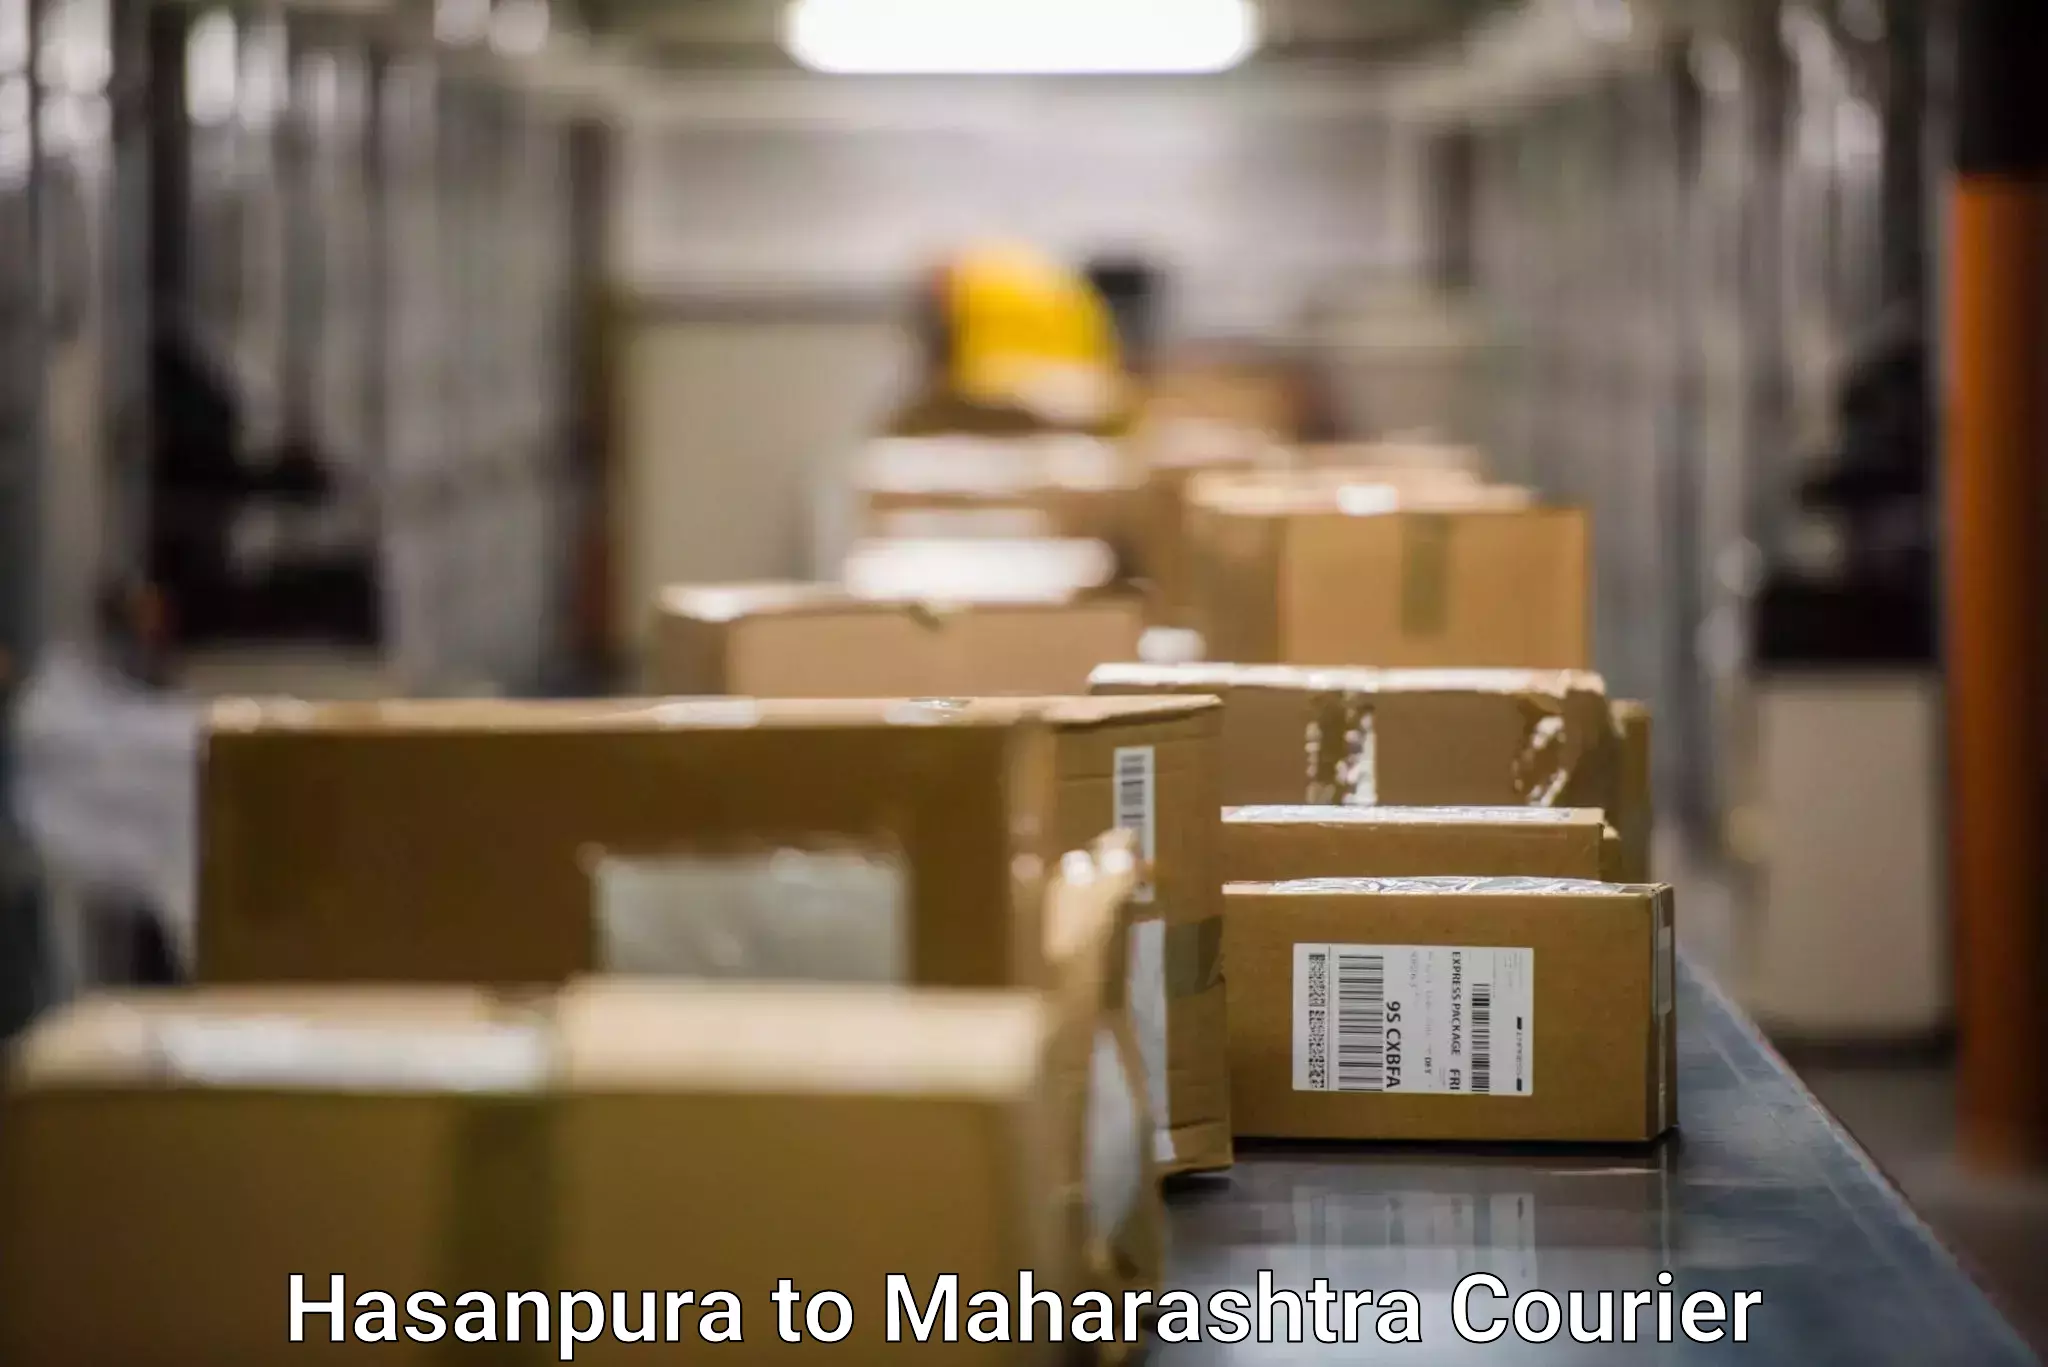 Courier service comparison Hasanpura to Rajgurunagar